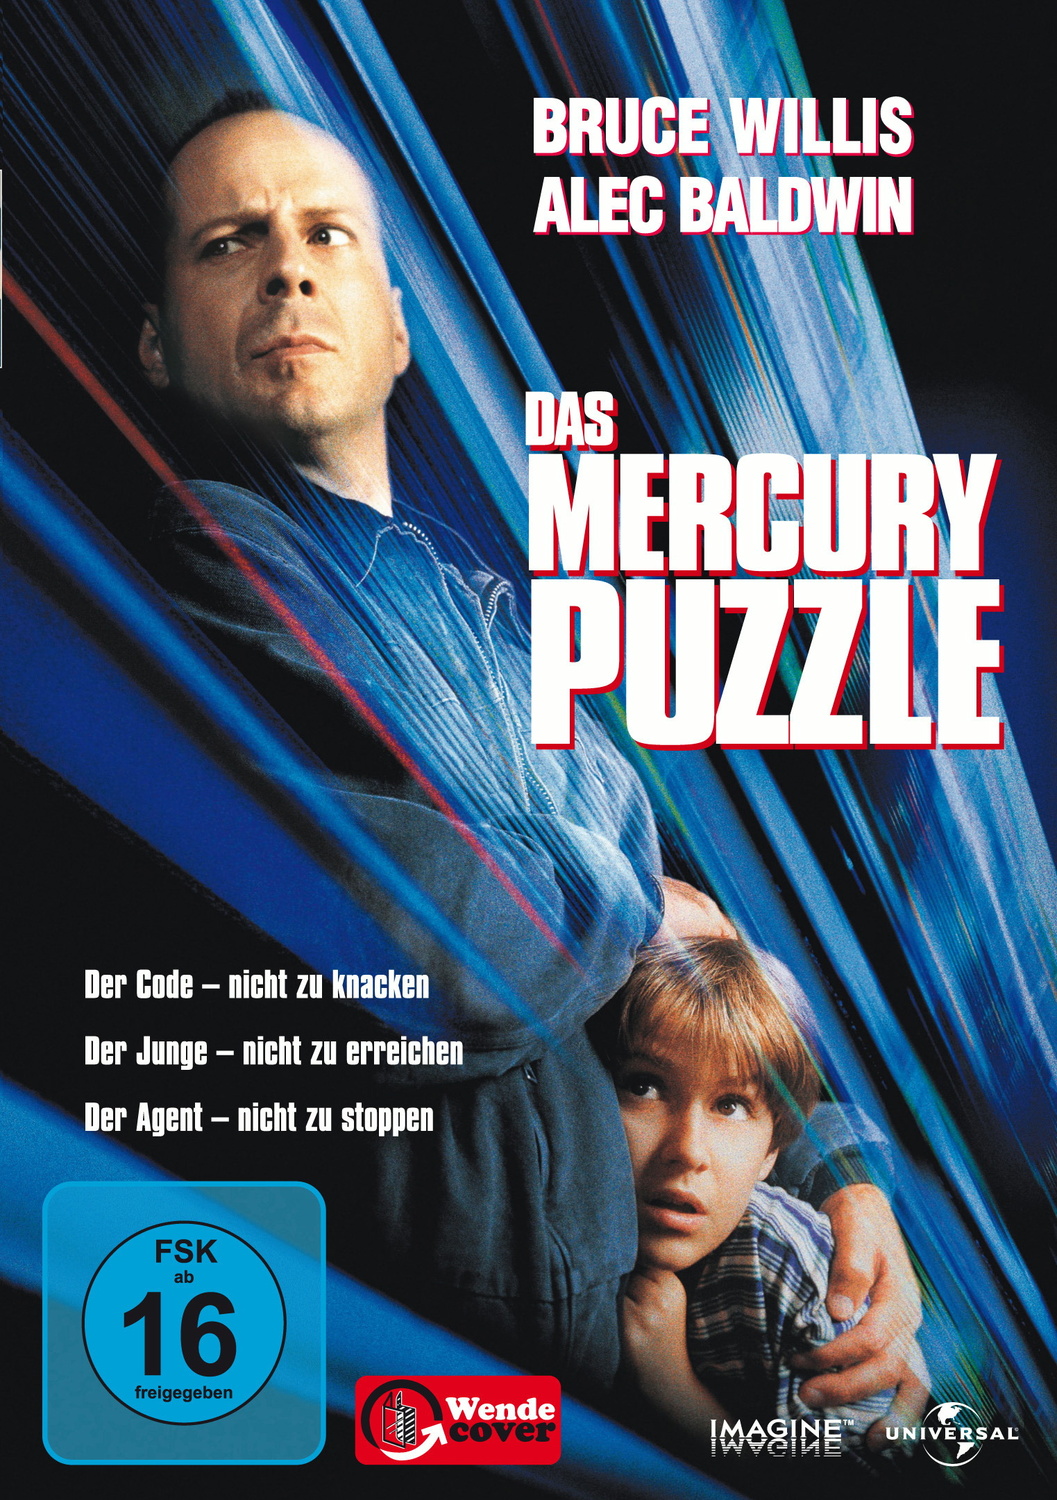 Das Mercury Puzzle von Universal Pictures